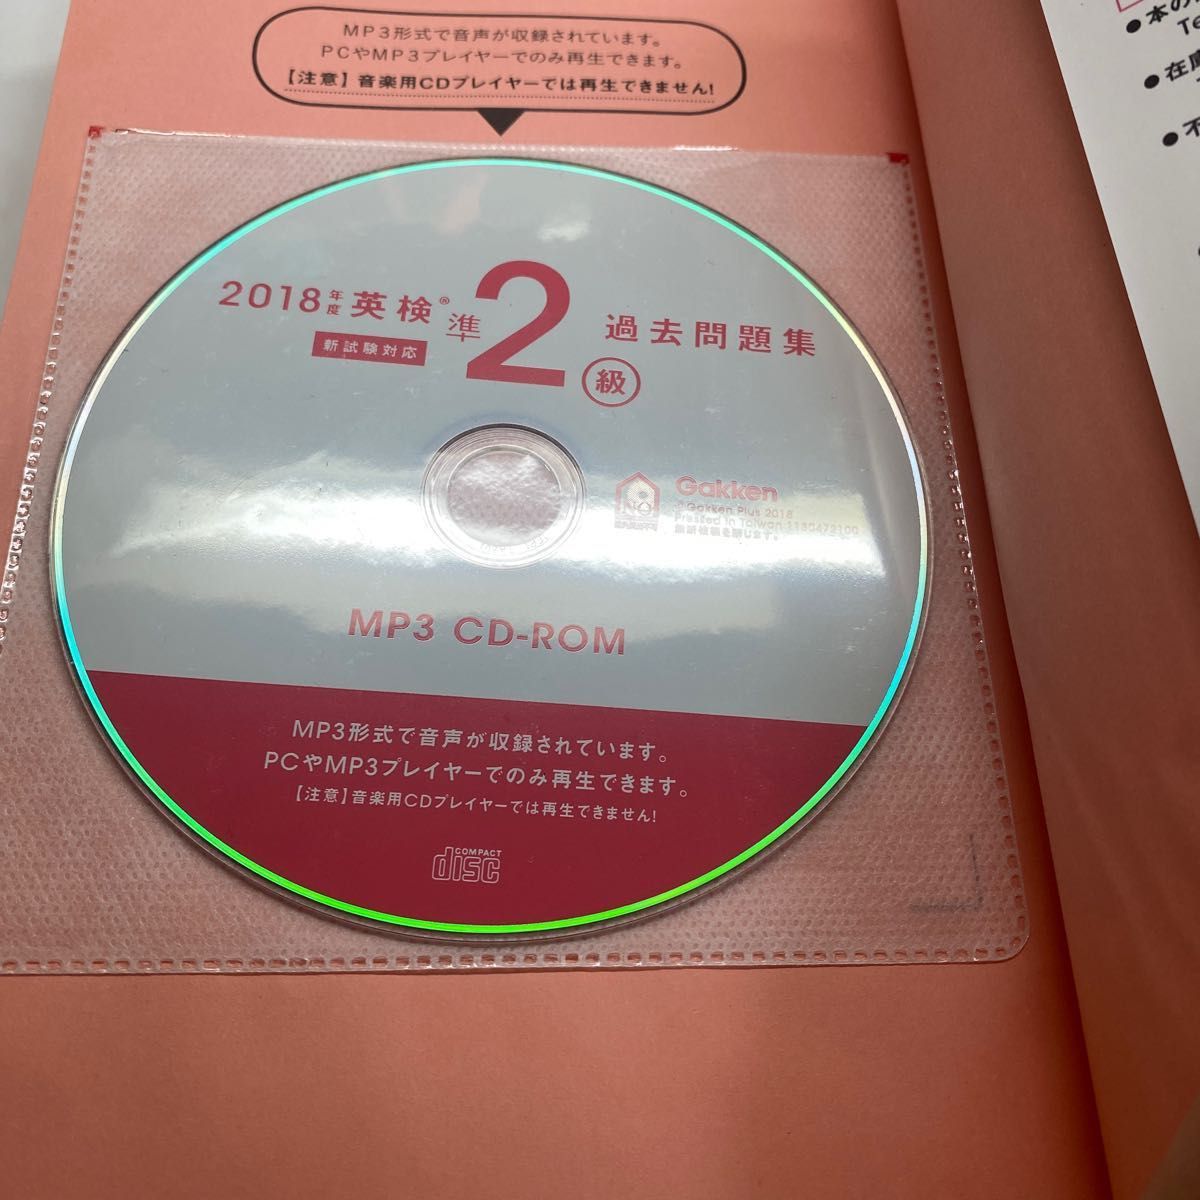 2018年度 英検準2級過去問題集 新試験対応 MP3 CD-ROMつき (英検過去問題集)